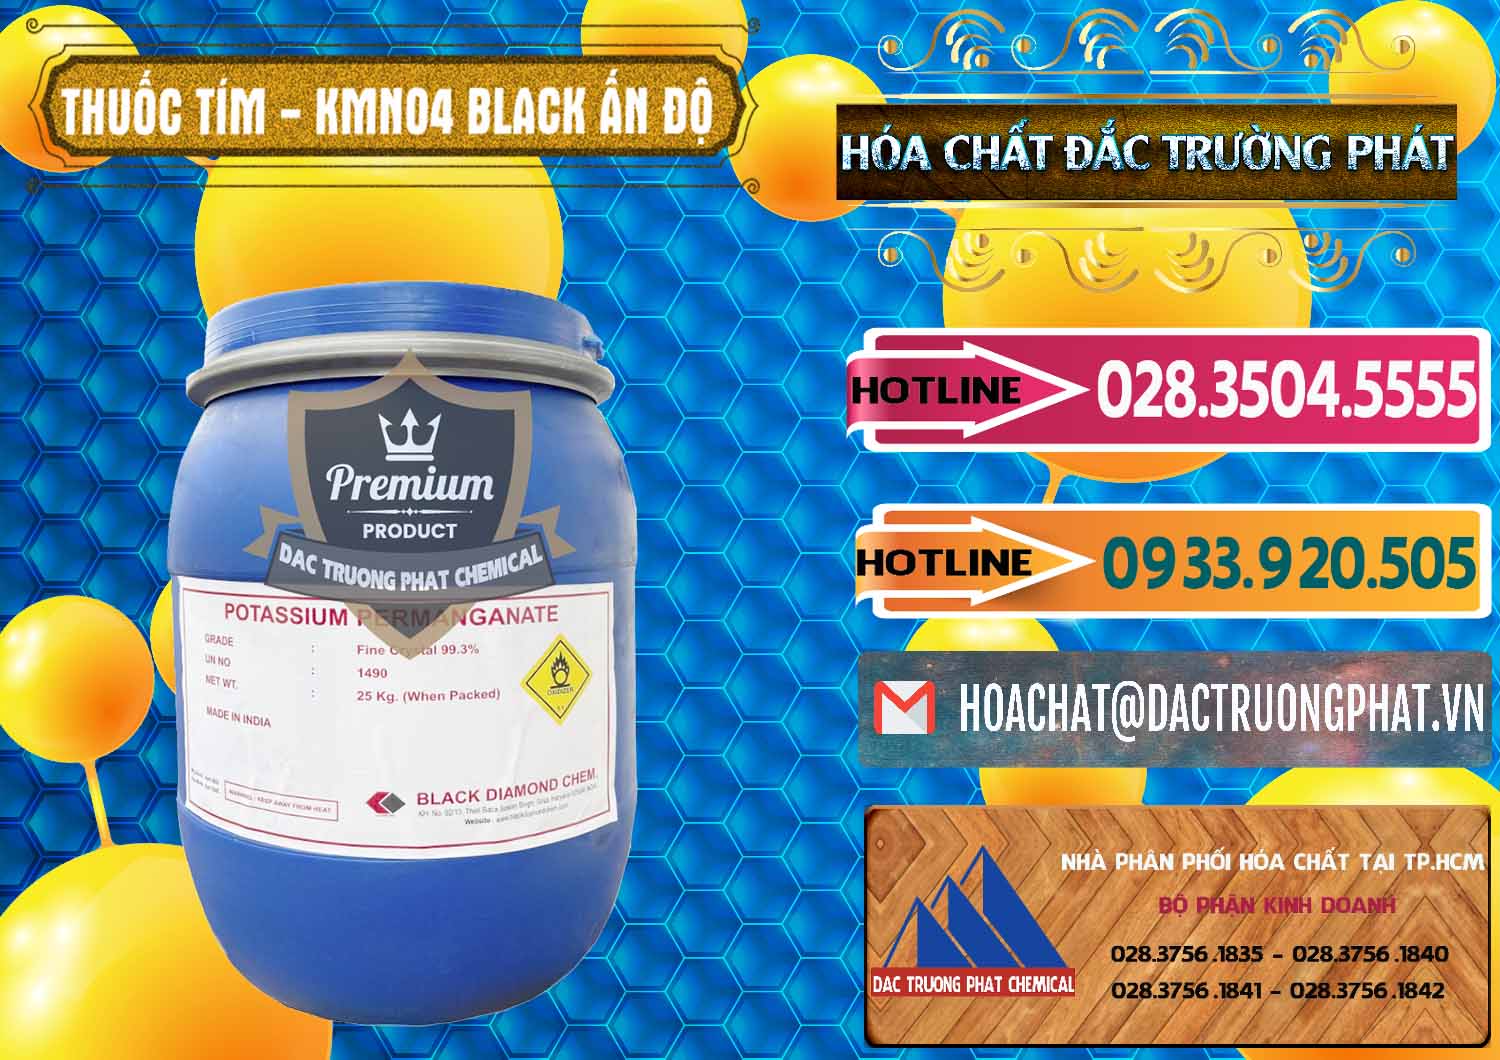 Cty chuyên cung ứng - bán Thuốc Tím - KMNO4 Black Diamond Ấn Độ India - 0414 - Chuyên cung cấp & nhập khẩu hóa chất tại TP.HCM - dactruongphat.vn